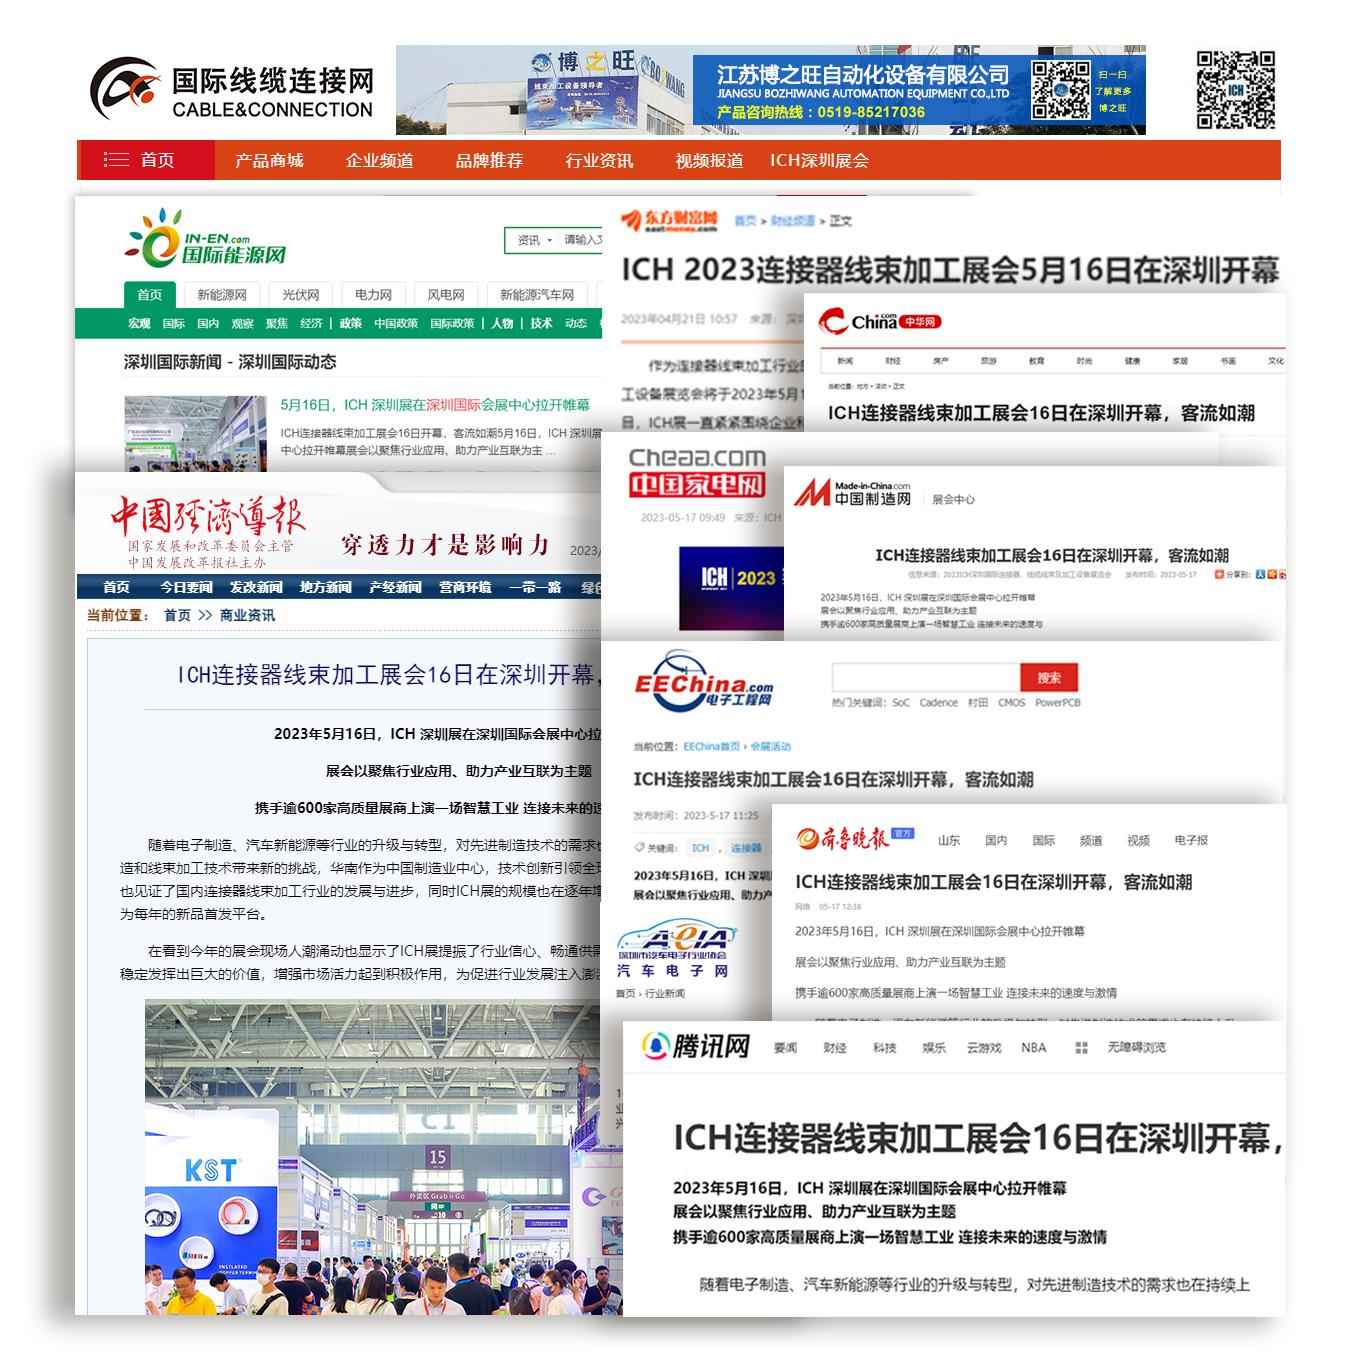 2024第14届深圳国际连接器、线缆线束及加工设备展览会